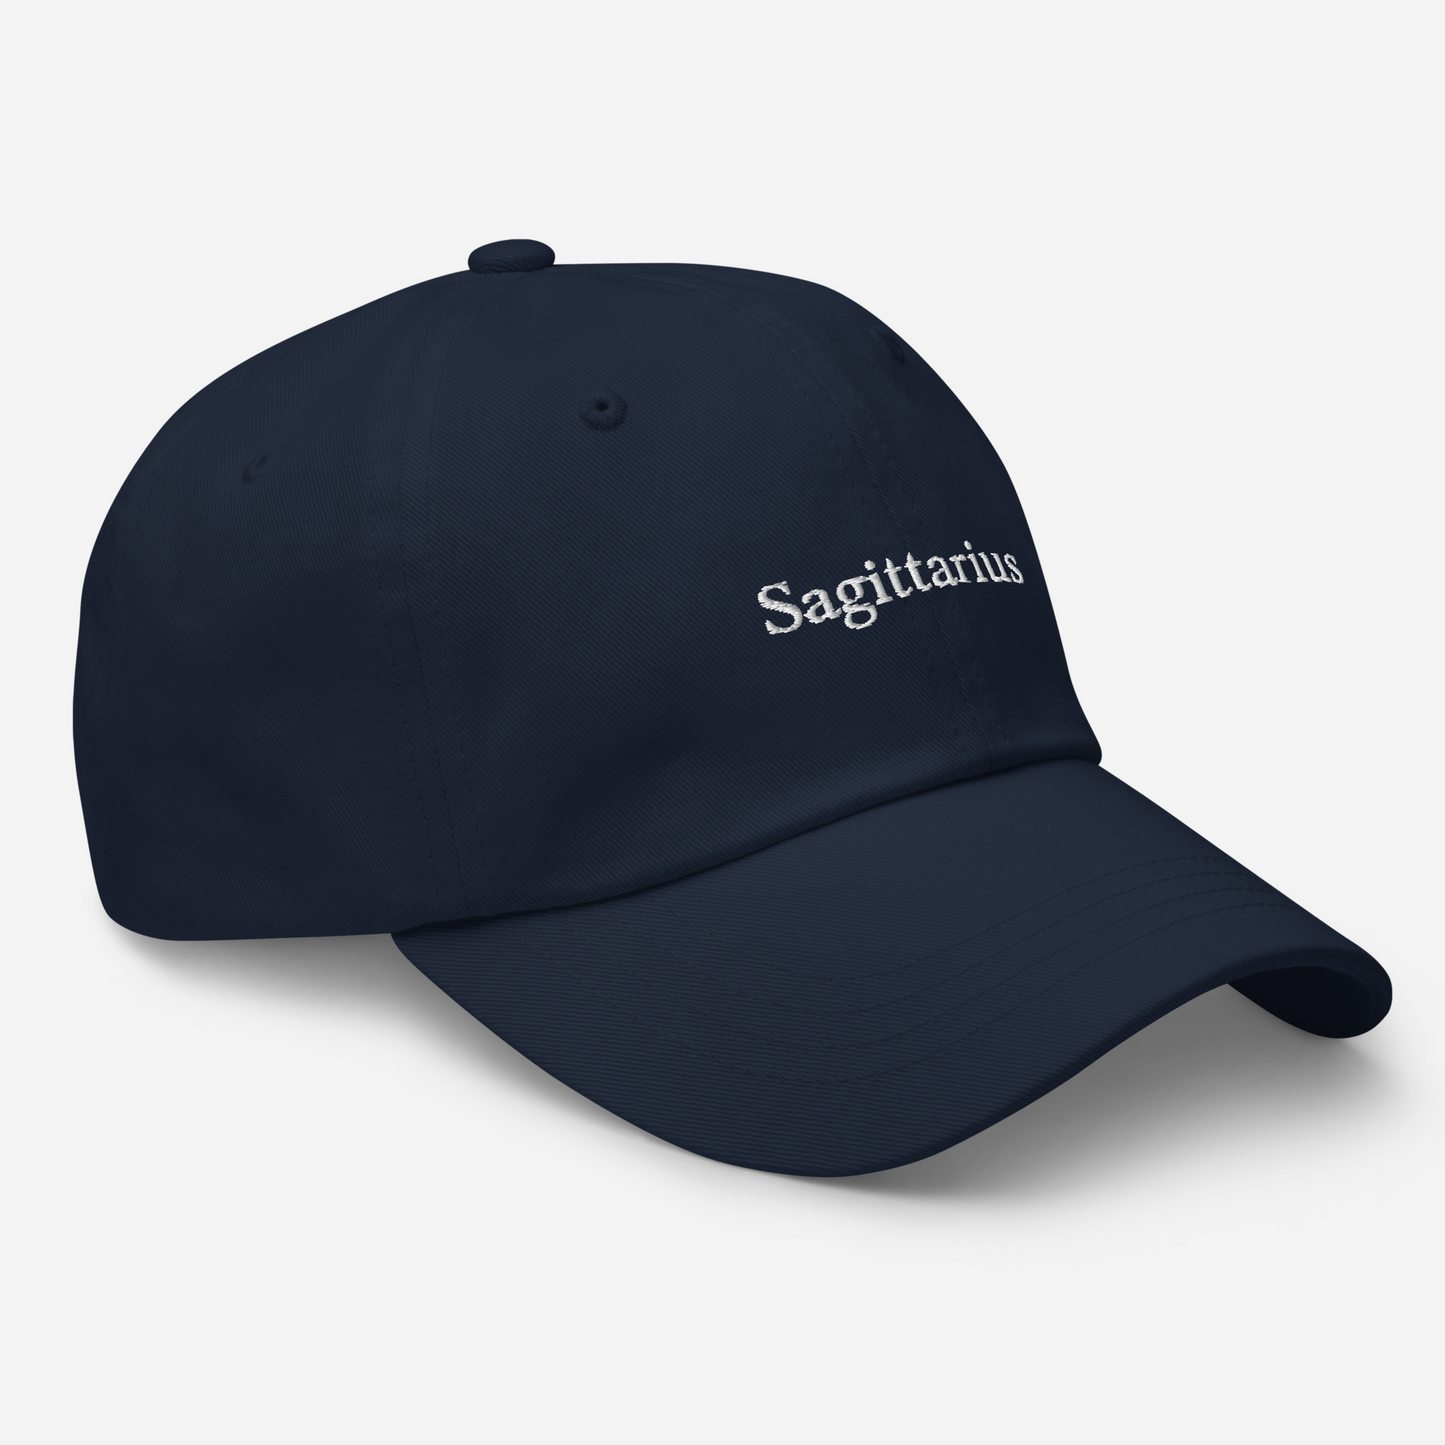 Sagittarius Baseball Cap